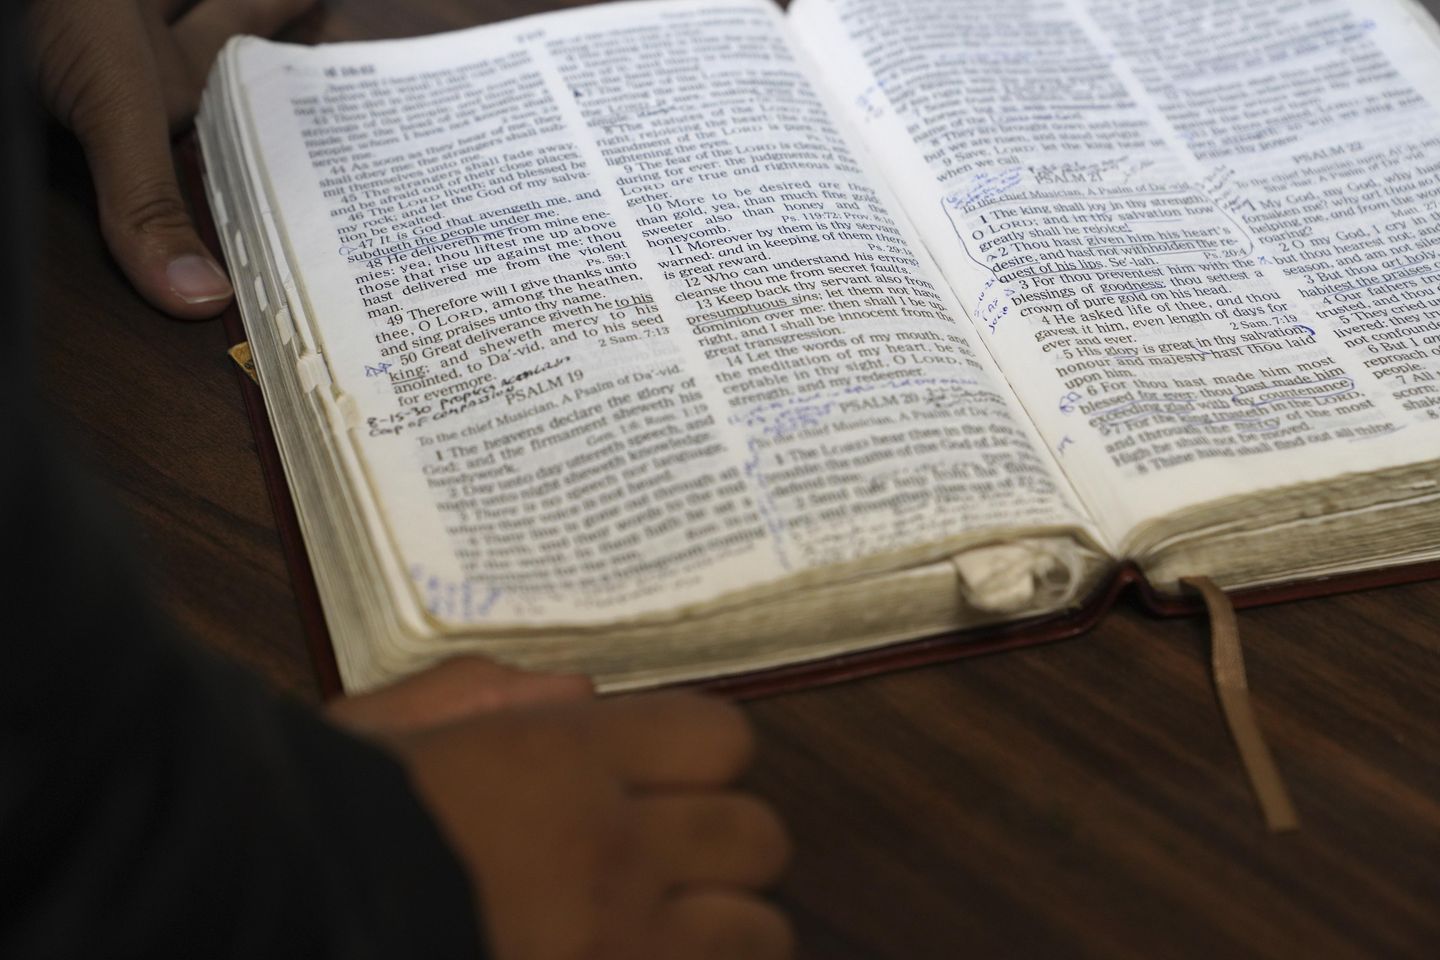 Preadolescente quedó ensangrentado y retorciéndose después de ‘exorcismo’ en campamento bíblico, según informe